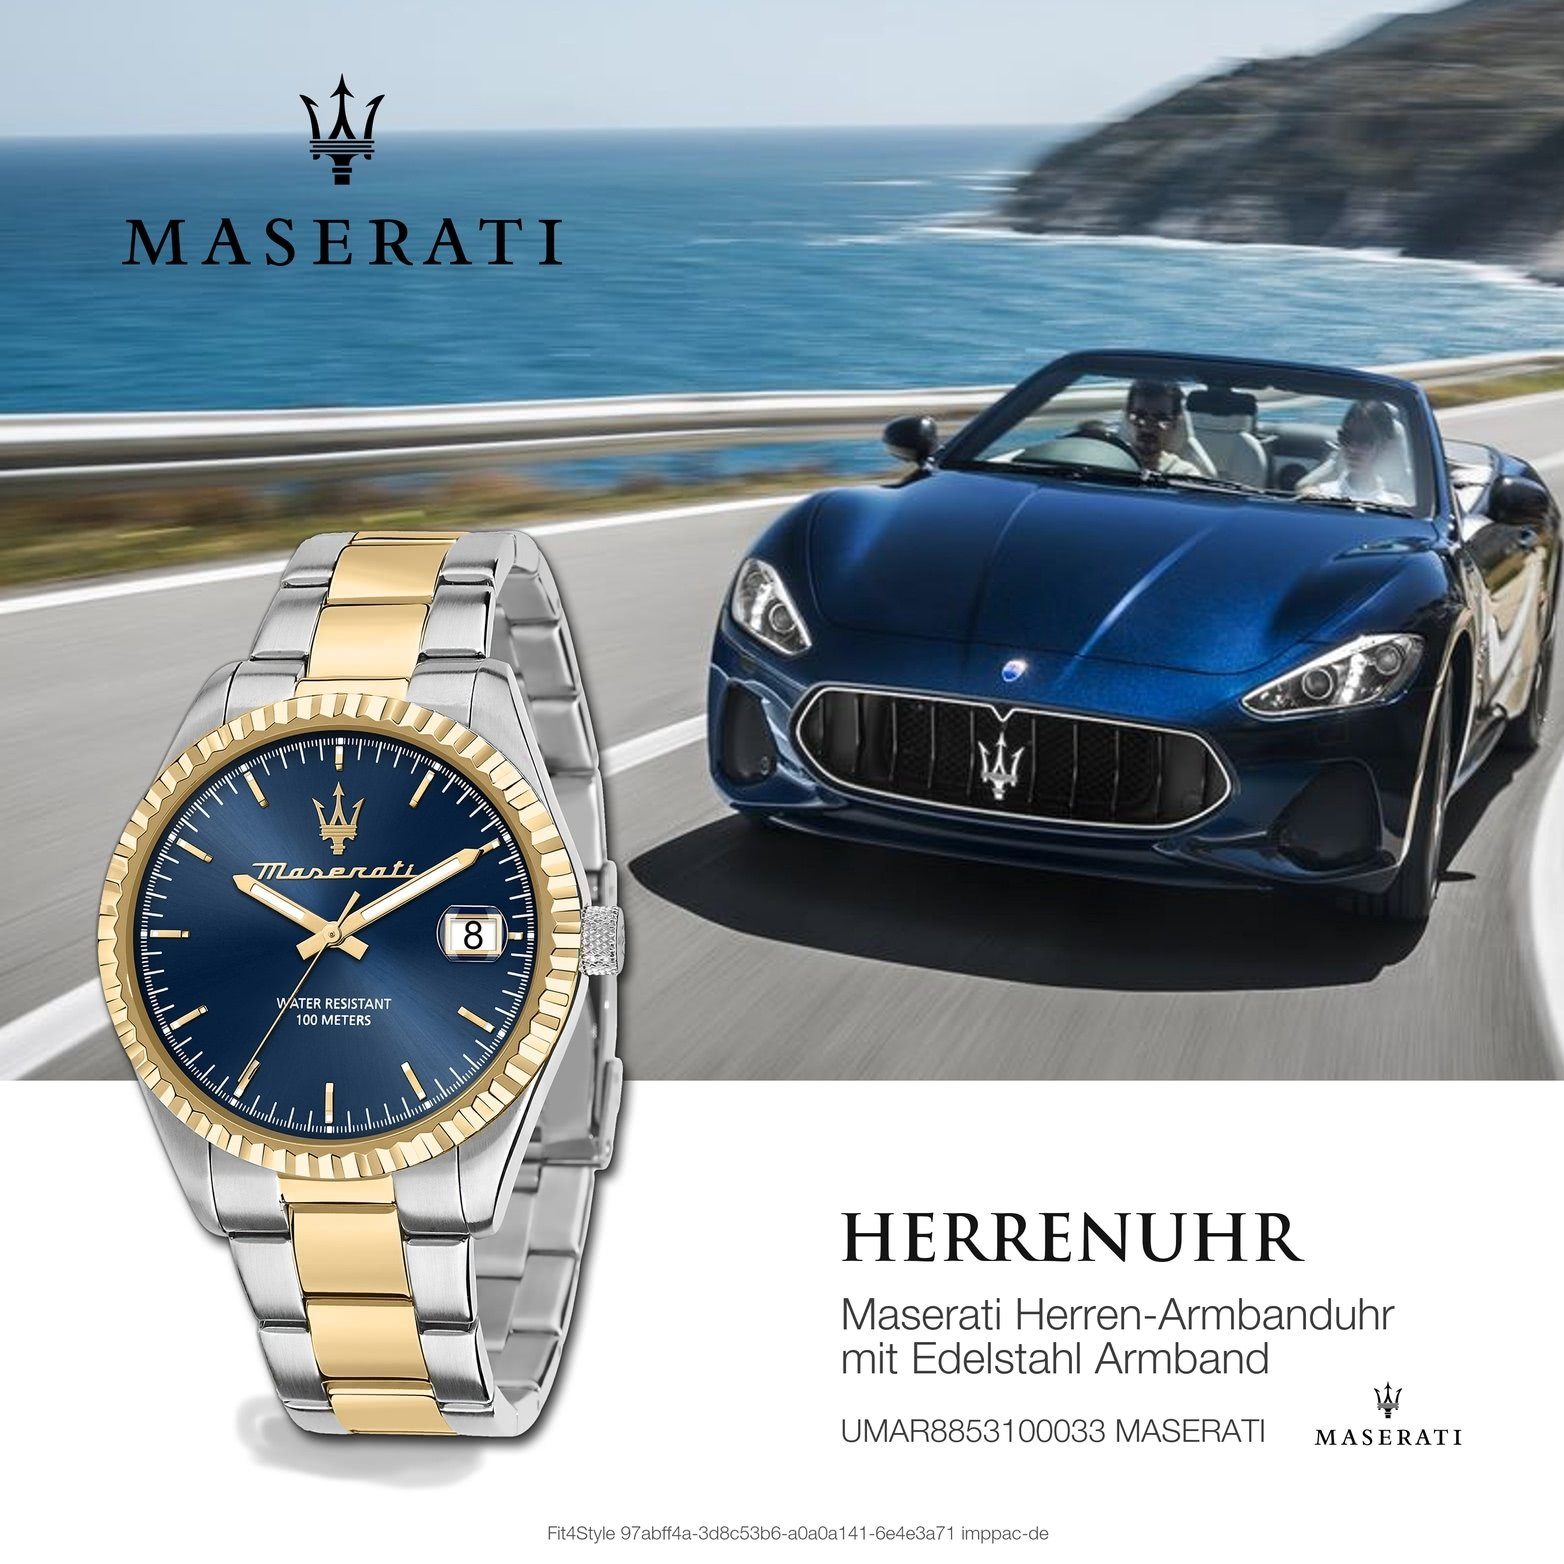 MASERATI Quarzuhr Maserati Herrenuhr Competizione, Edelstahlarmband, 43mm) groß Herrenuhr Gehäuse, (ca. rundes blau